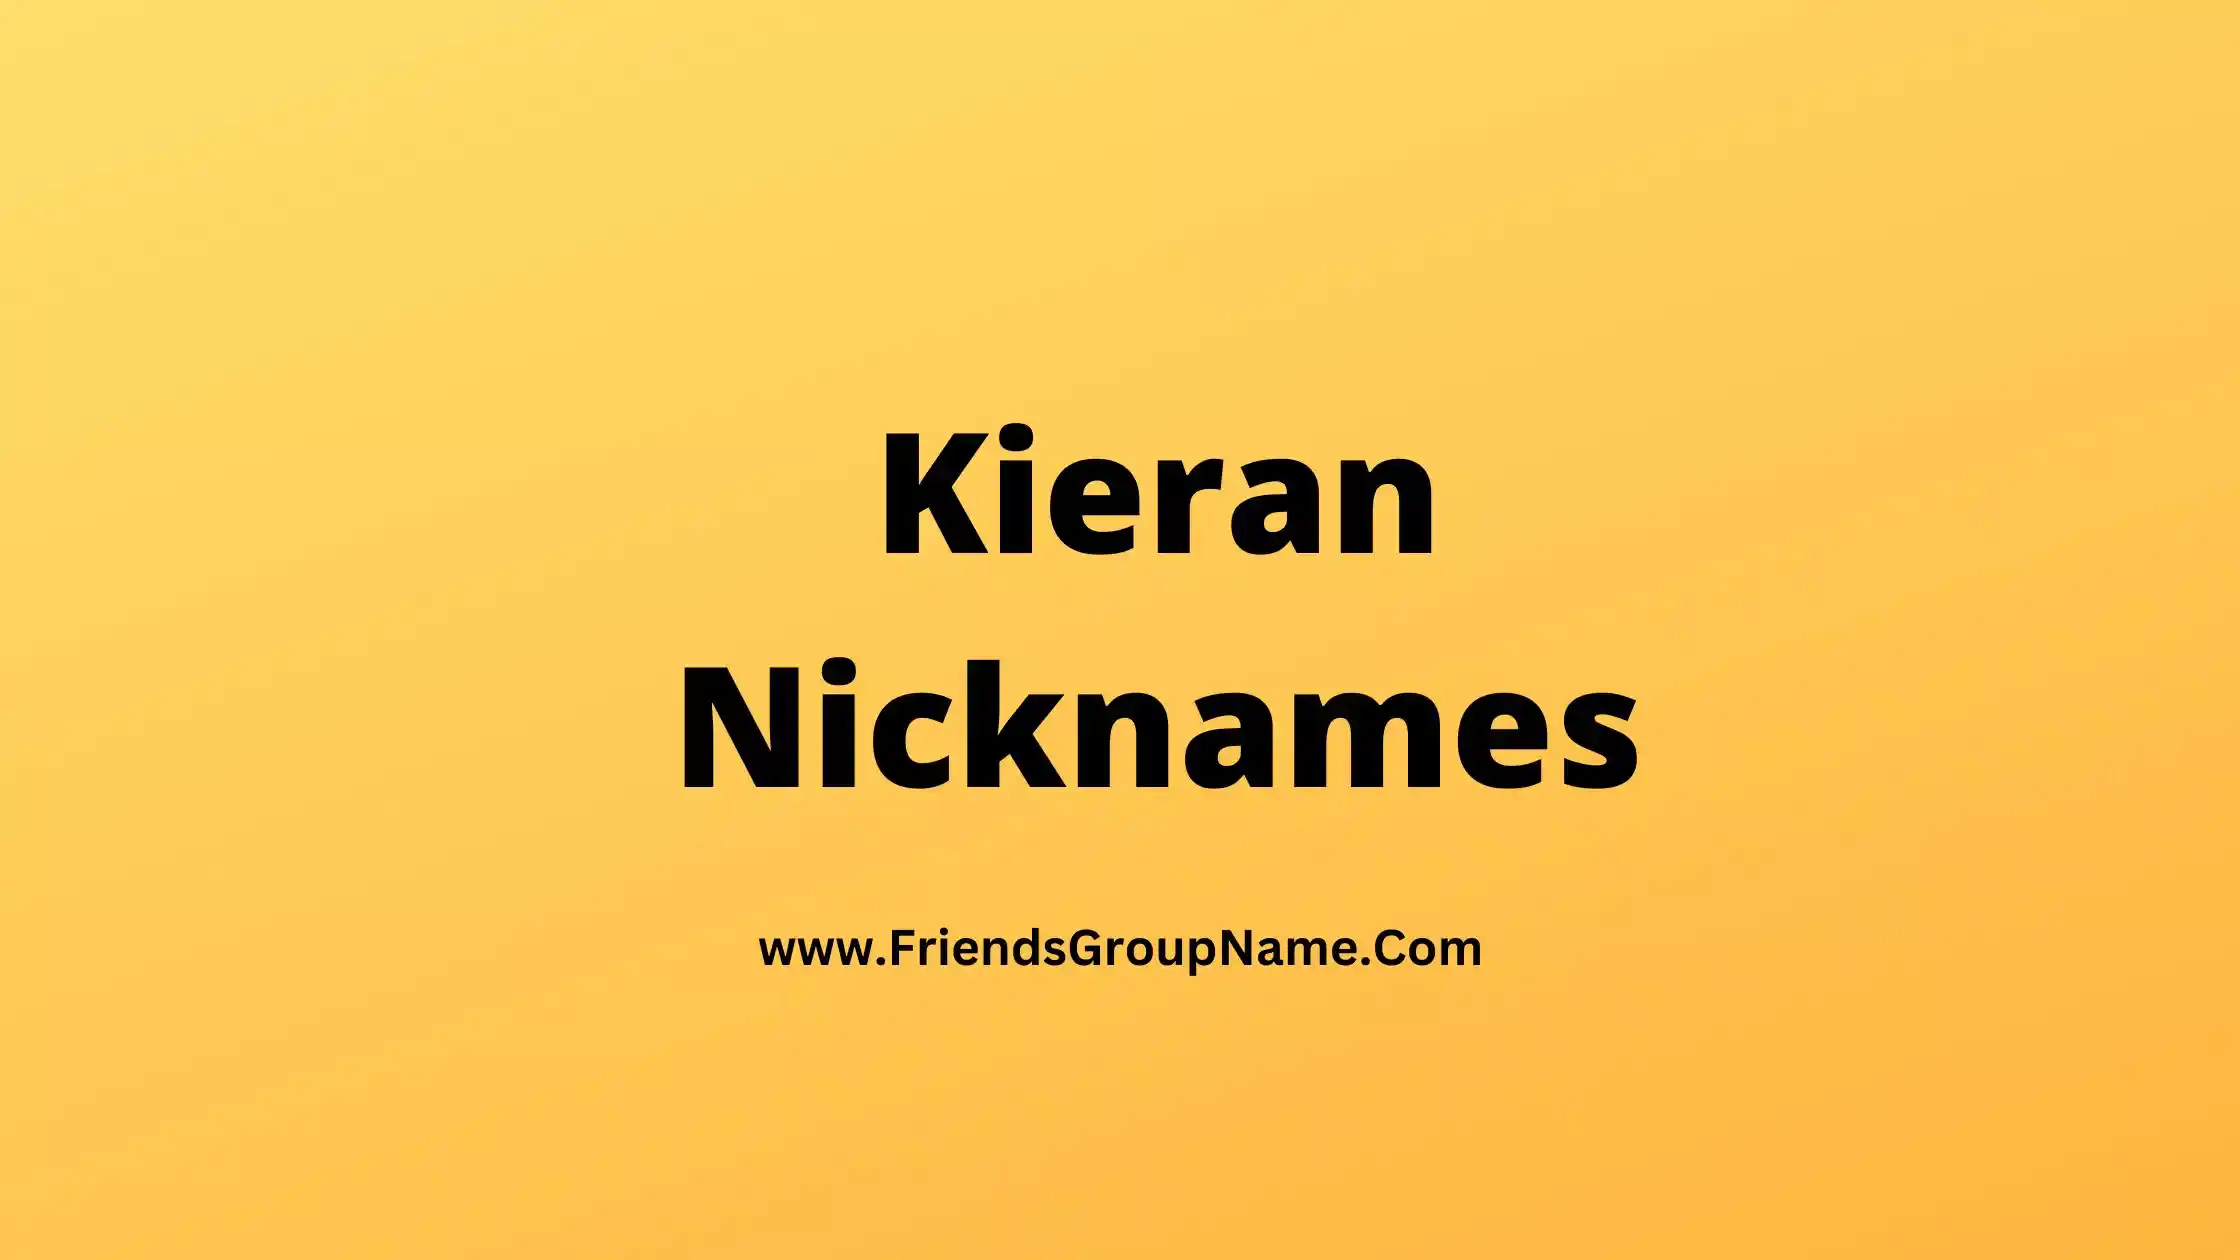 Kieran Nicknames